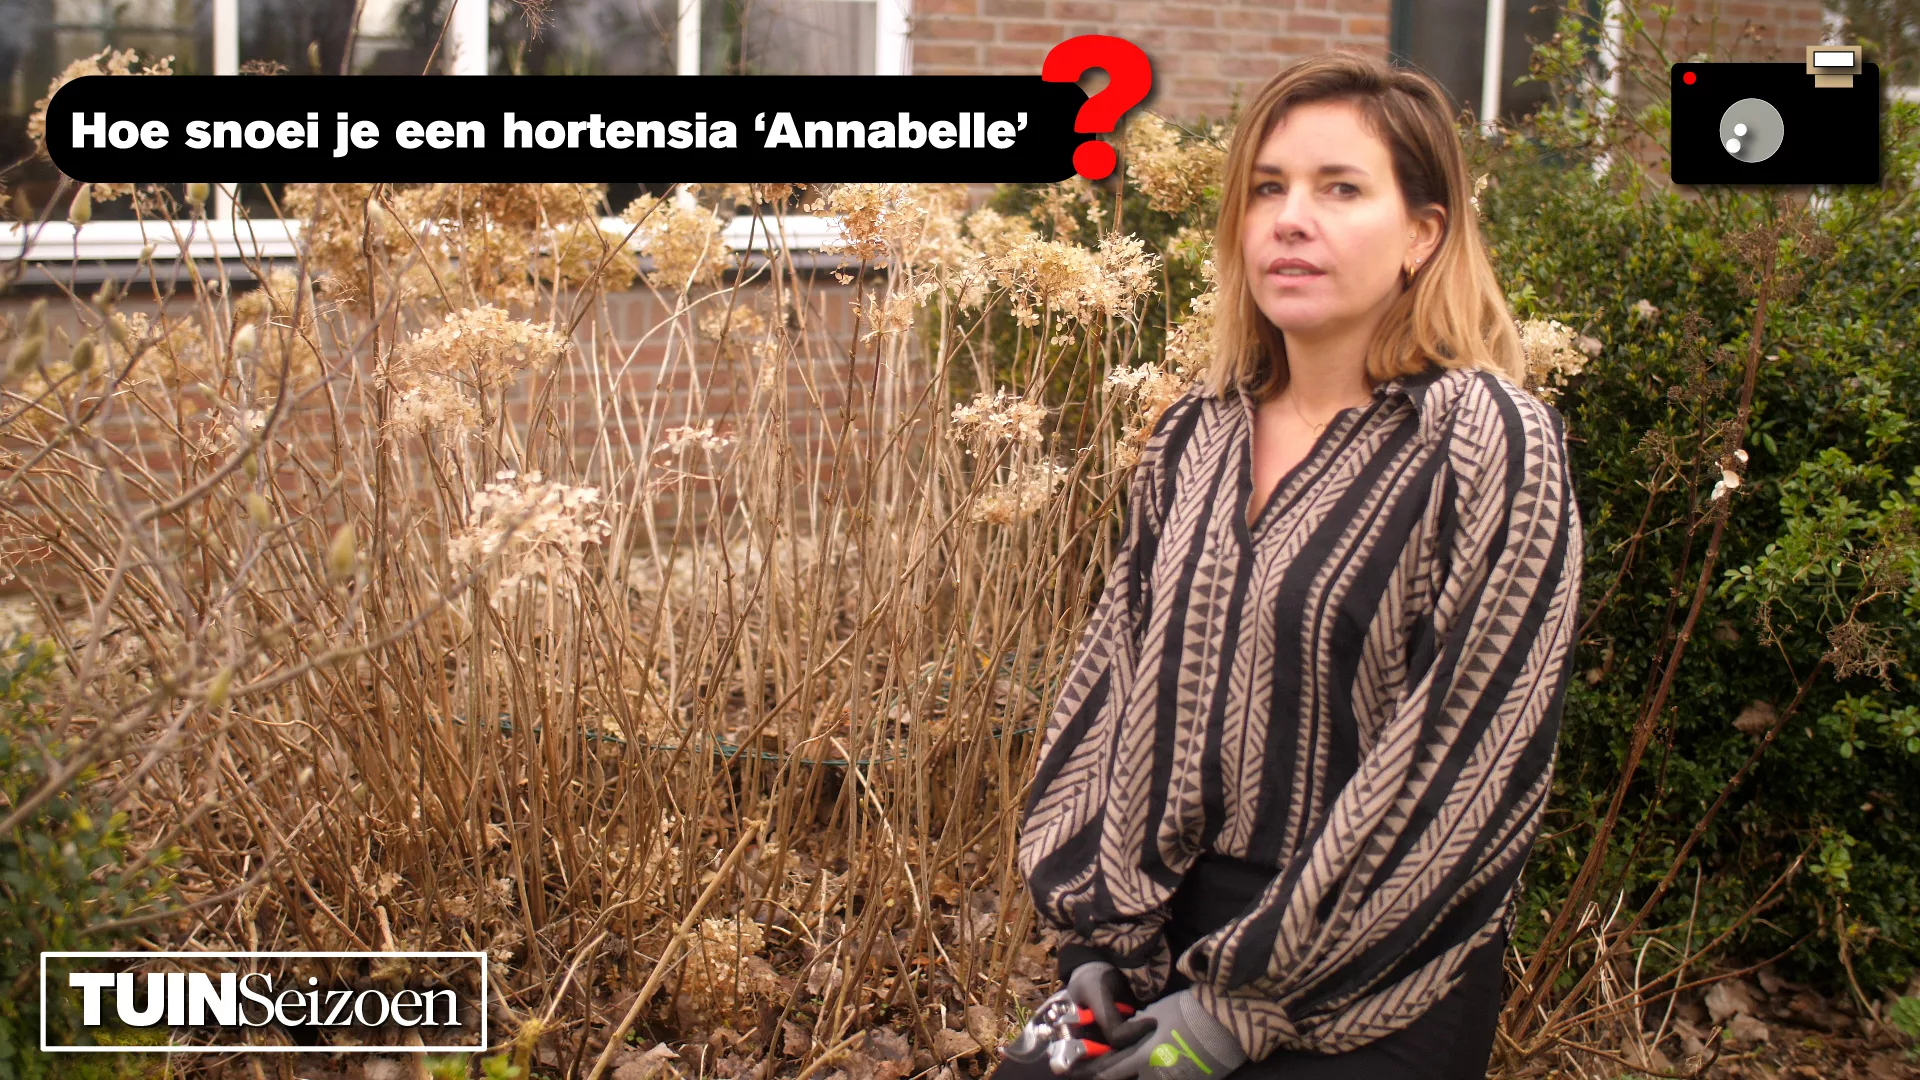 Hortensia ‘Annabelle’ snoeien